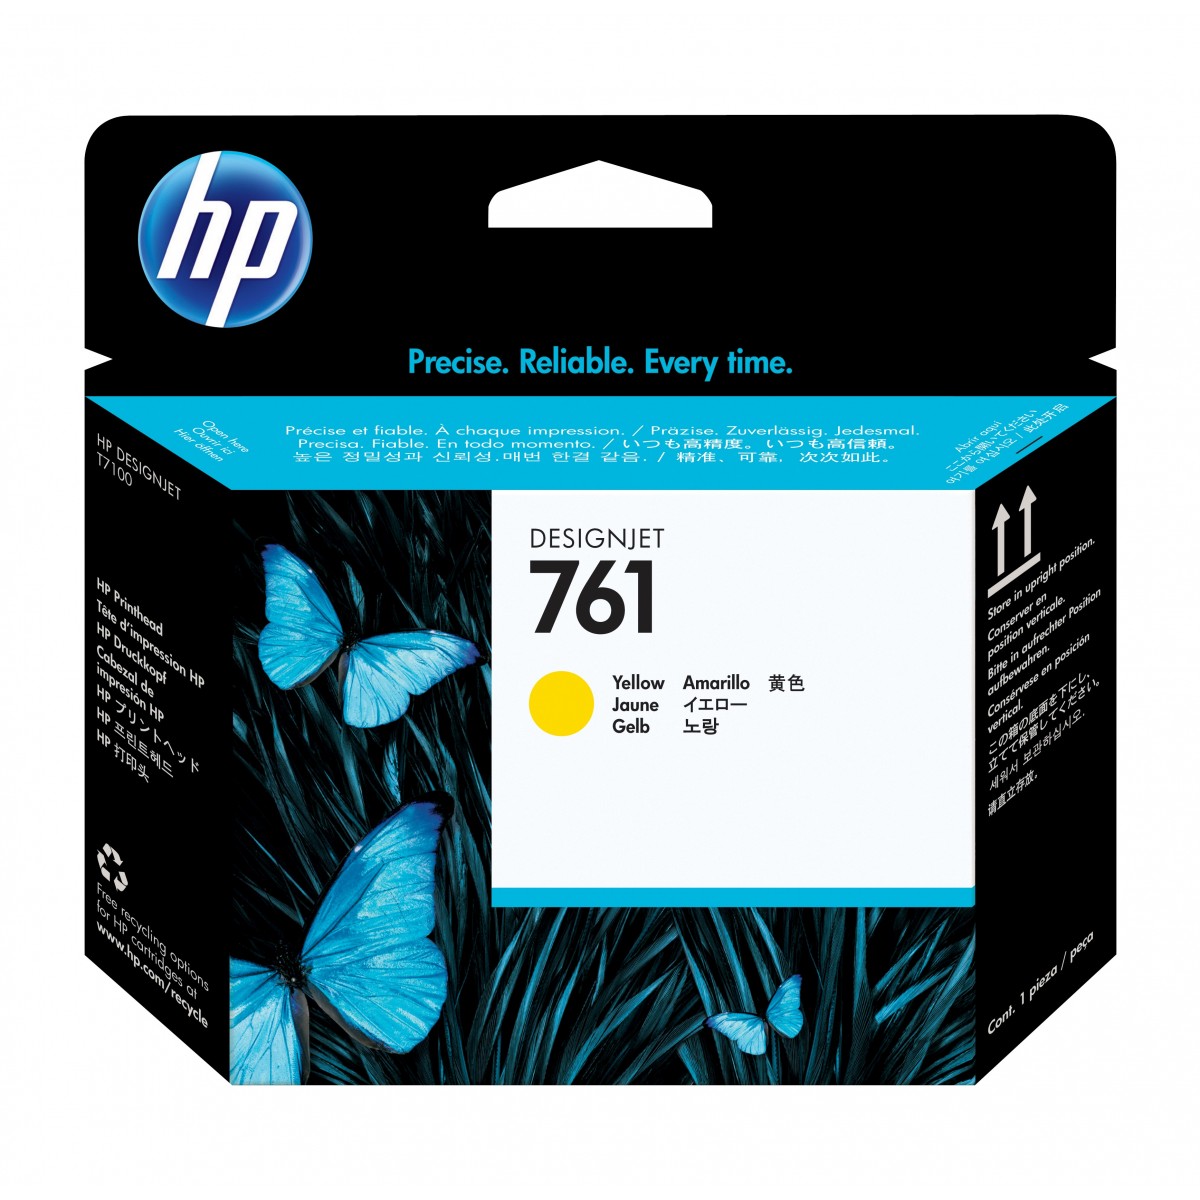 HP DesignJet 761 - Ink Cartridge Original - Yellow - 400 ml